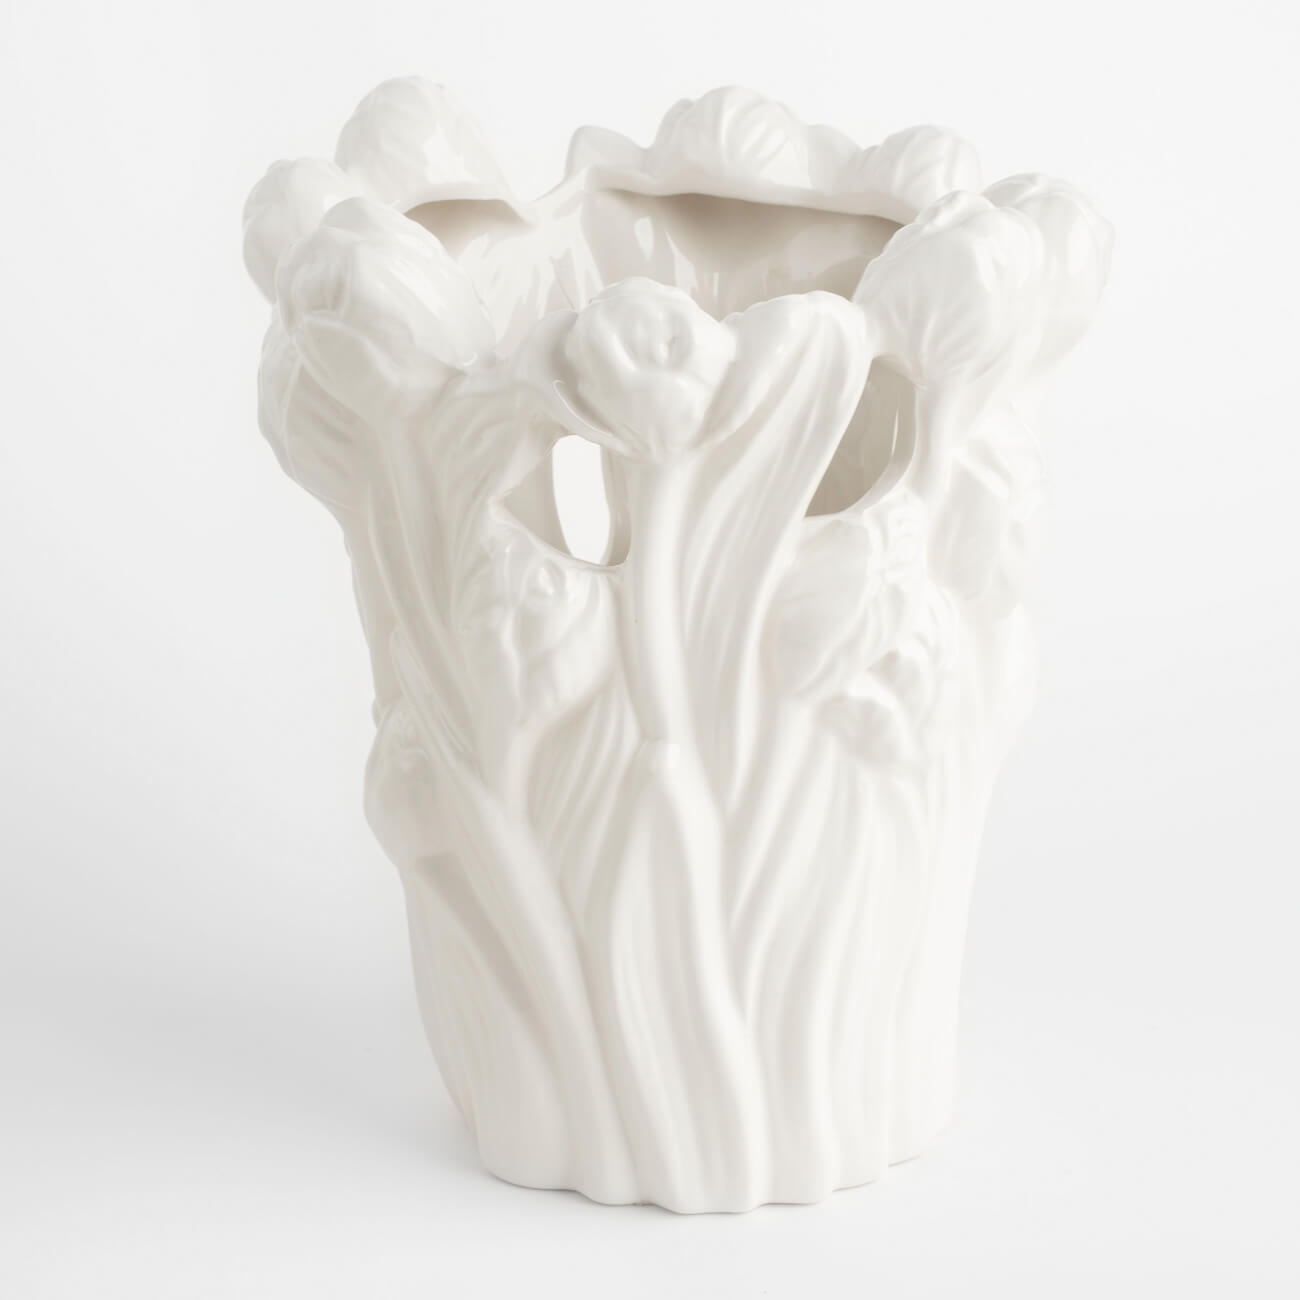 Ваза для цветов, 25 см, декоративная, керамика, белая, Тюльпаны, Tulip ваза для сухо ов керамика настольная 27 5 см мурано y4 6553 белая